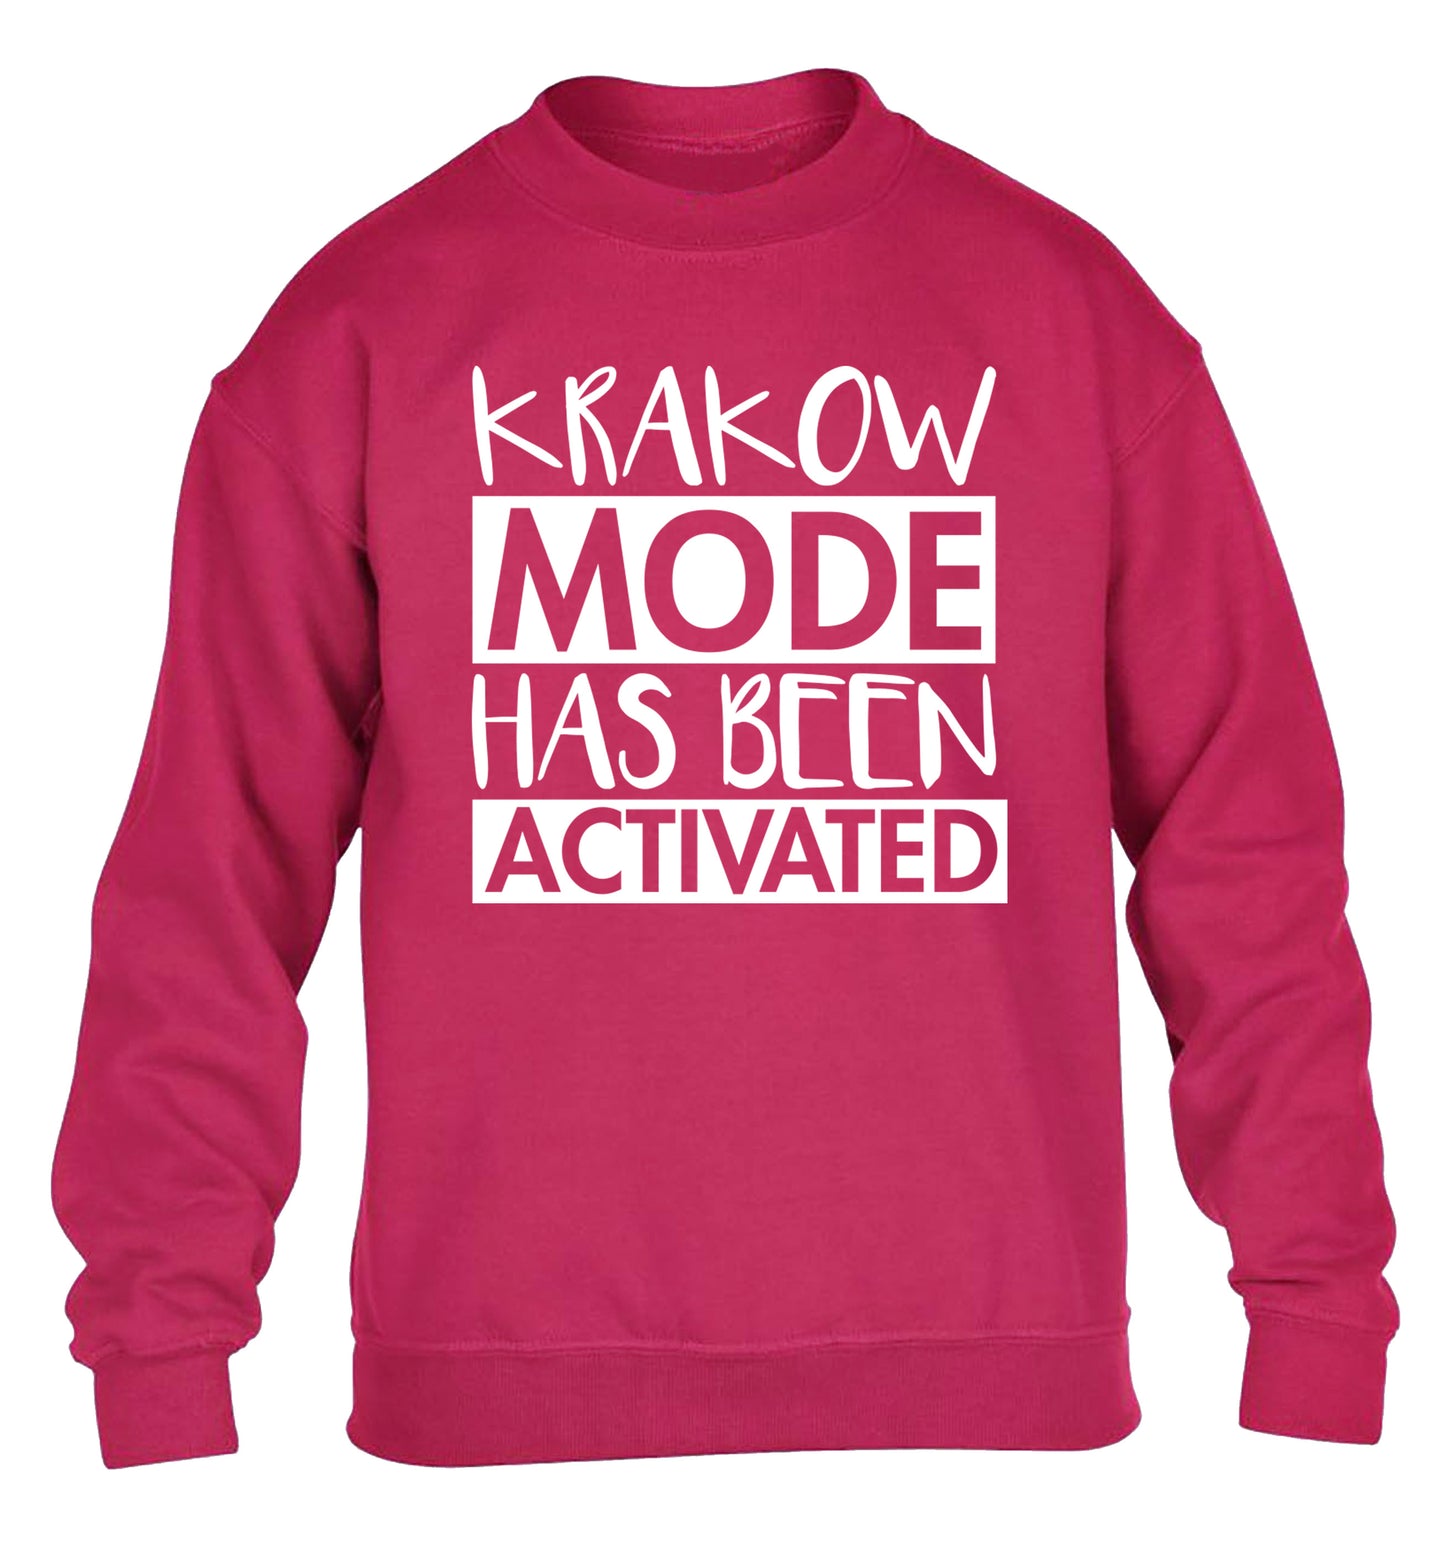 Krakow mode has been activated children's pink sweater 12-13 Years